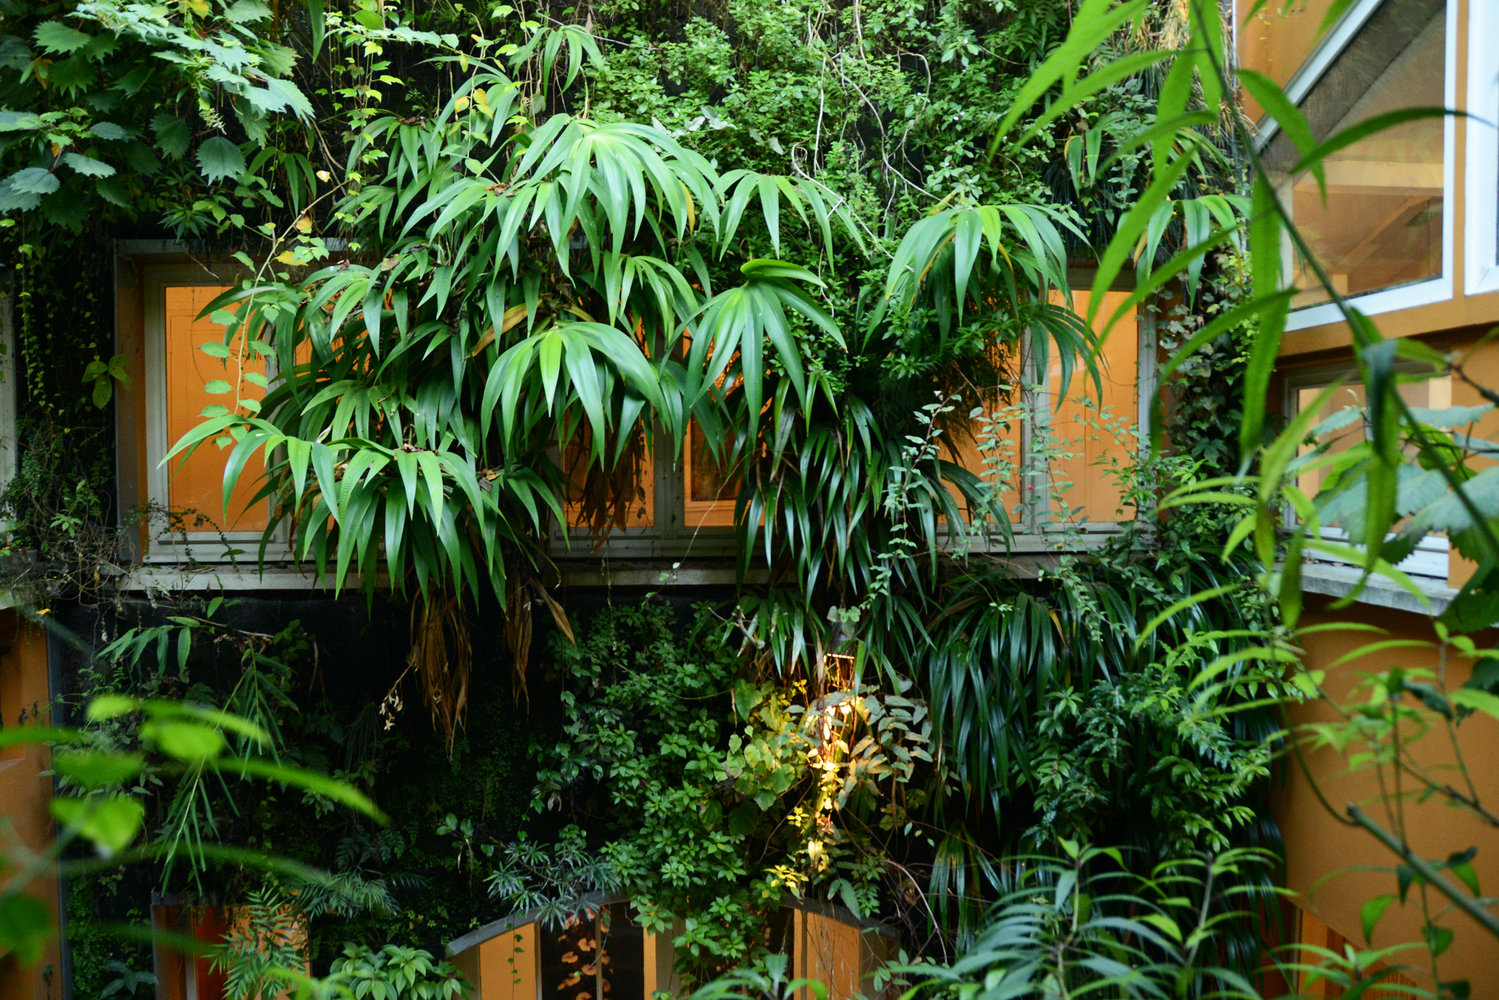 Le mur végétal intérieur - Les jardins du LFZ